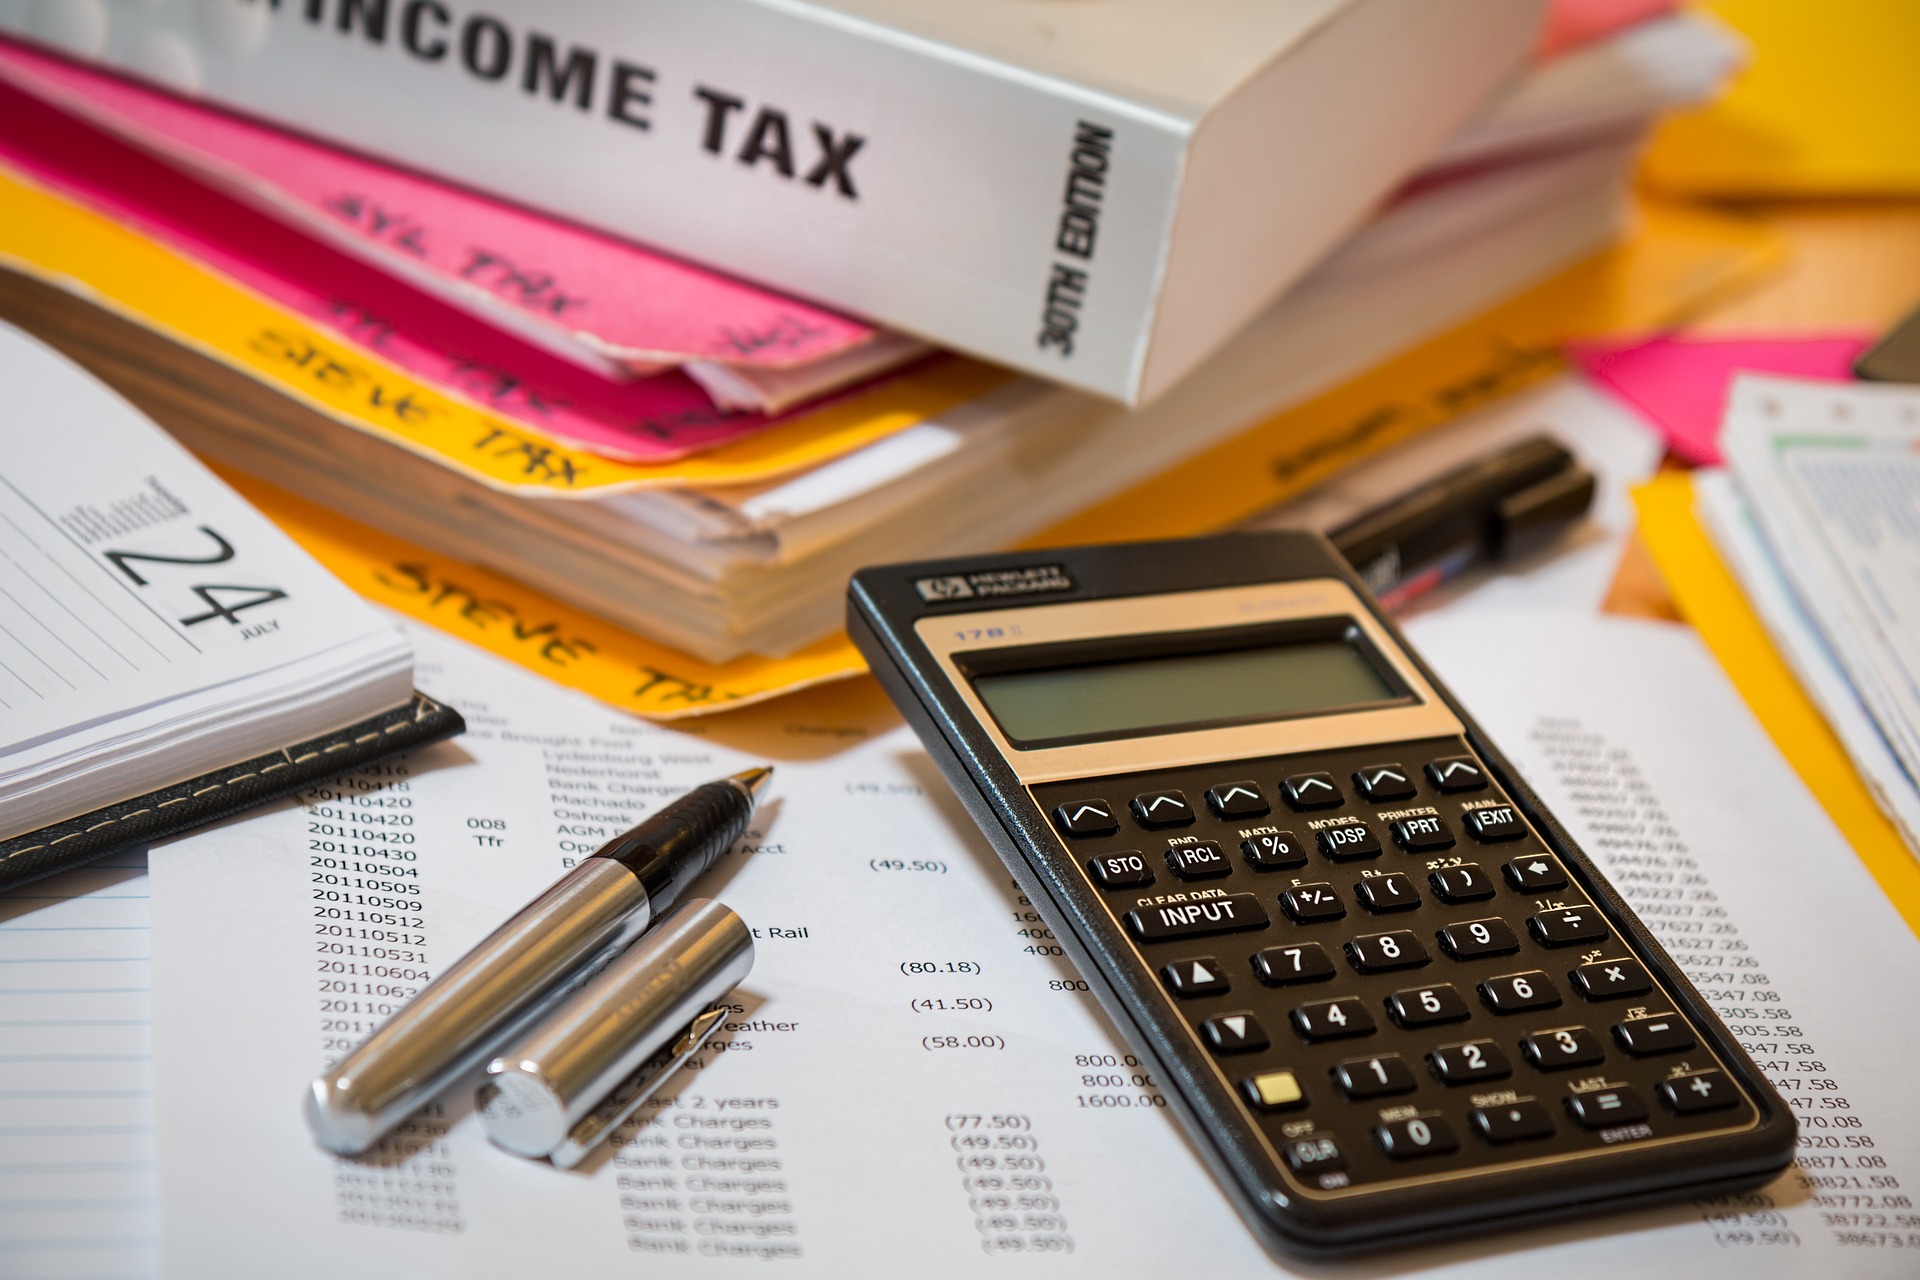 Οι 11 αλλαγές στον φορολογικό κώδικα - Τι προβλέπει το νομοσχέδιο